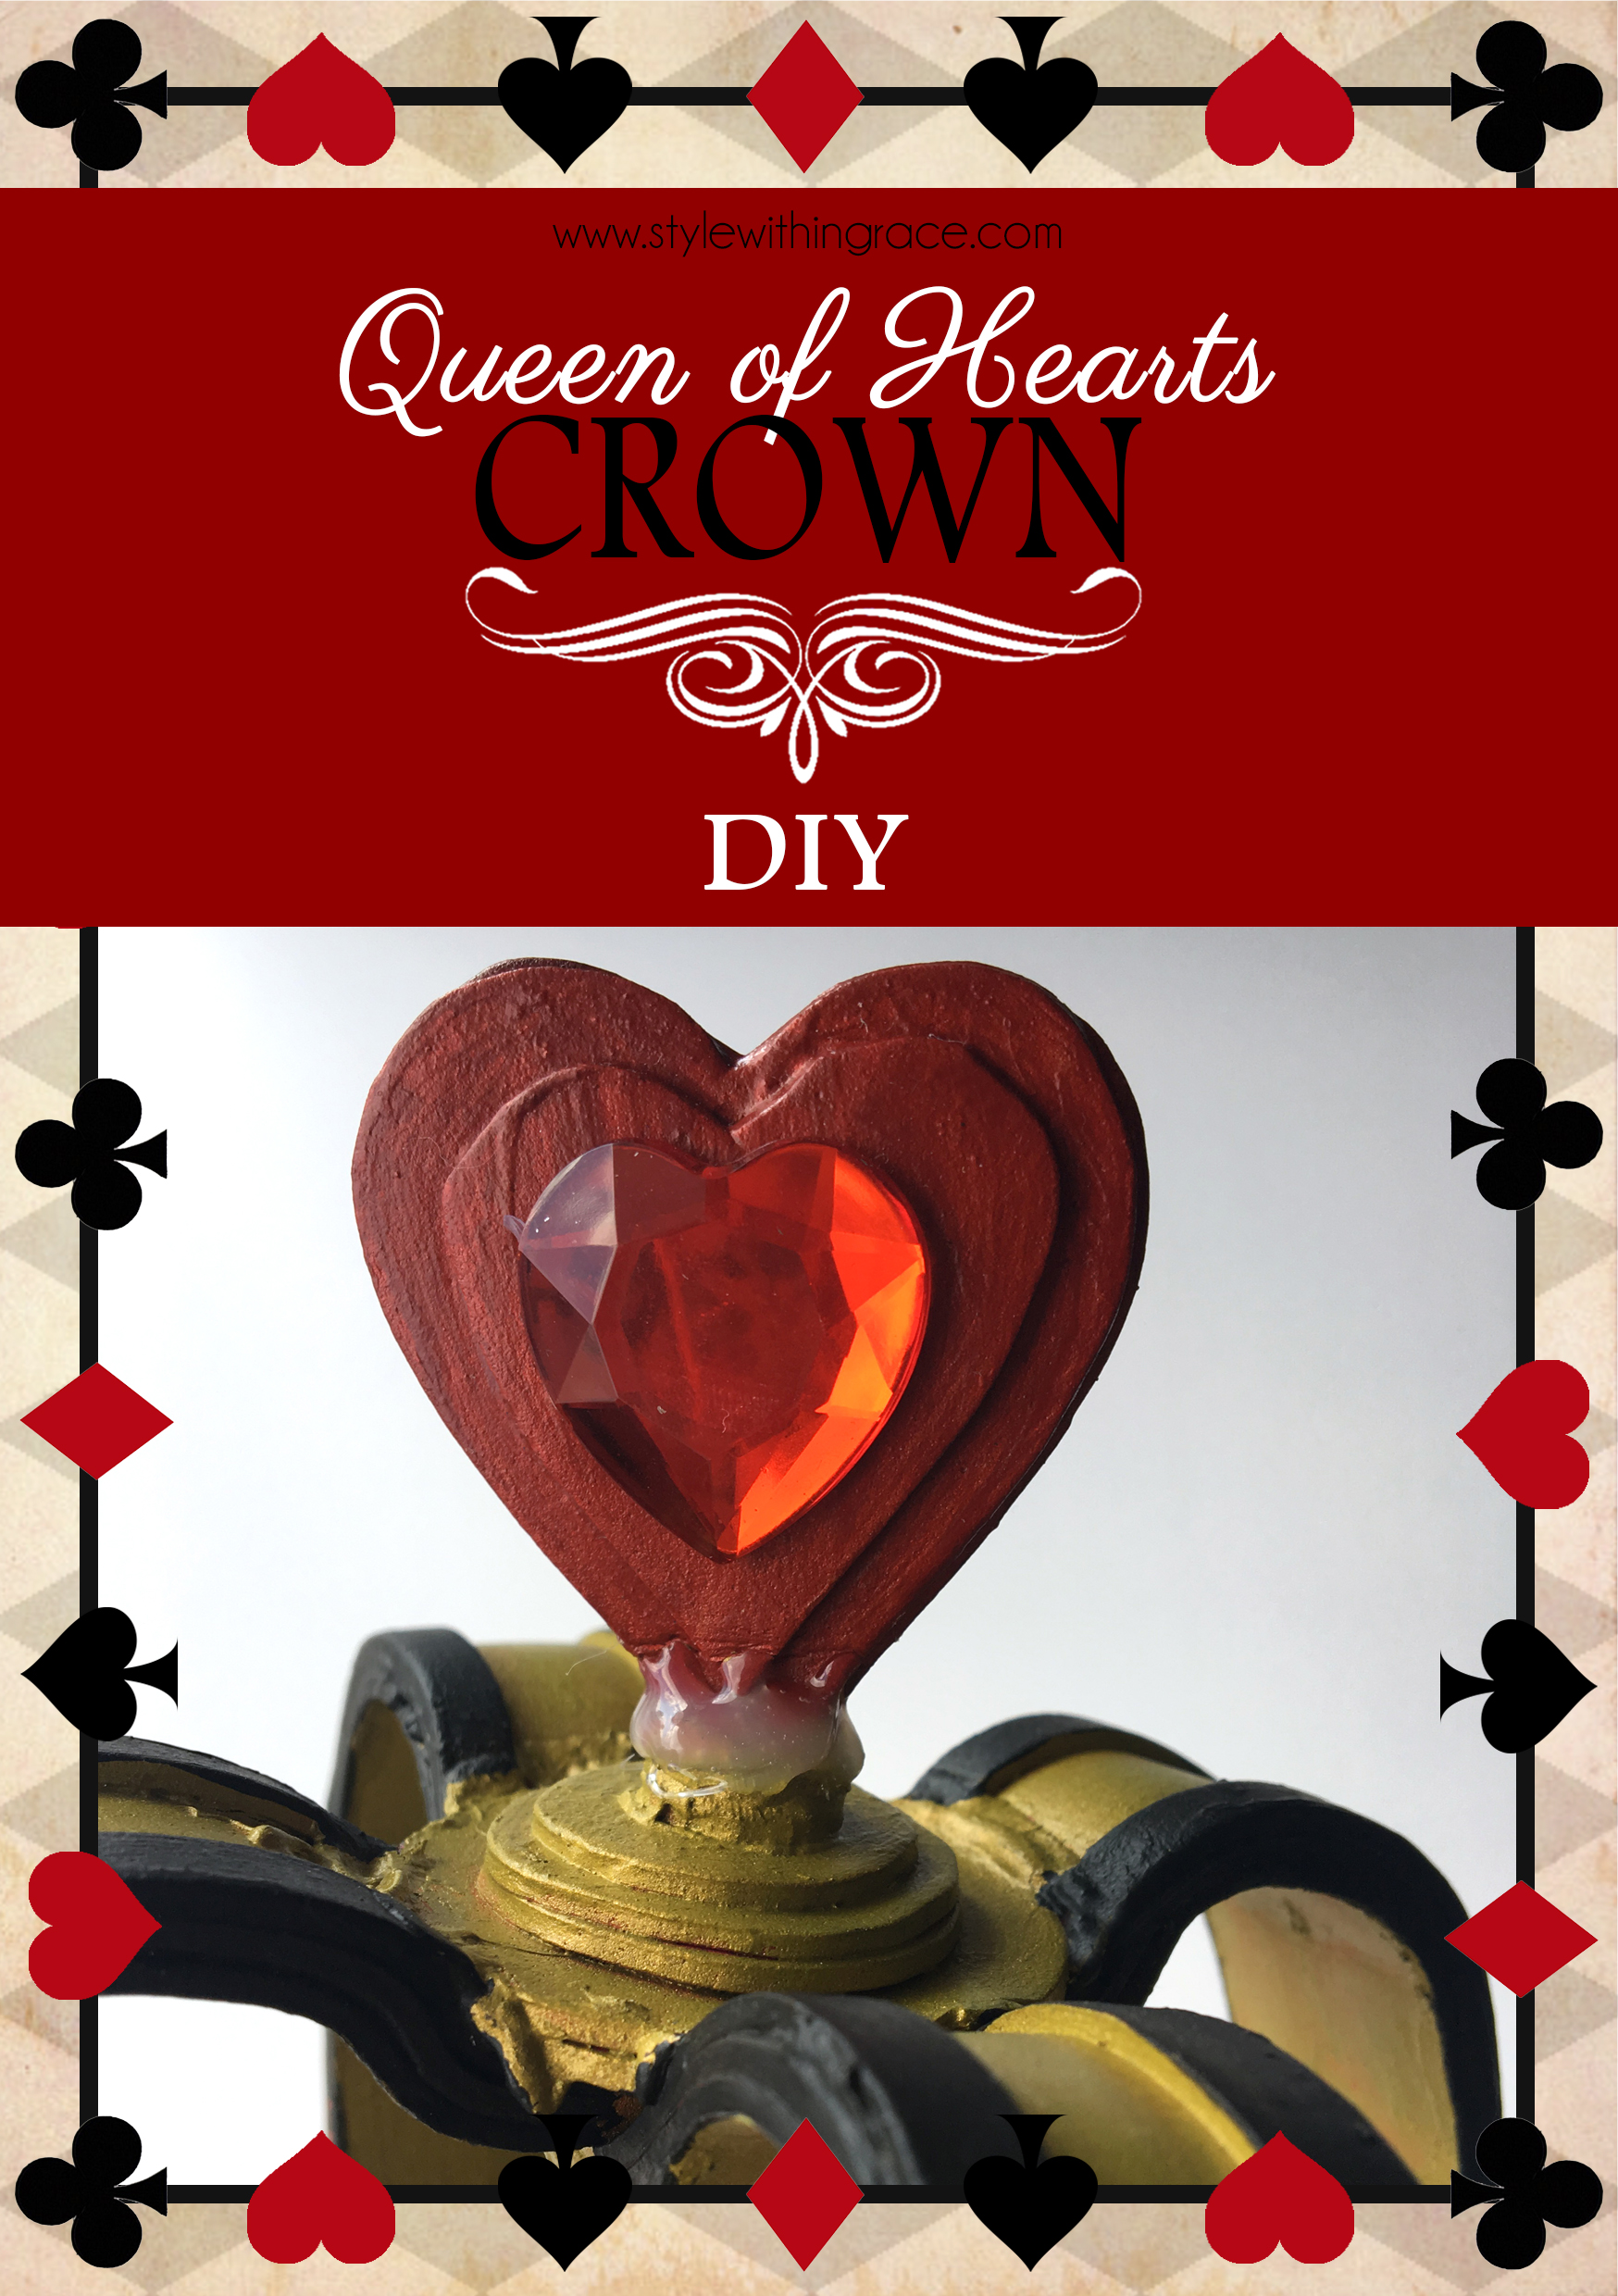 Queen of Hearts Crown DIY